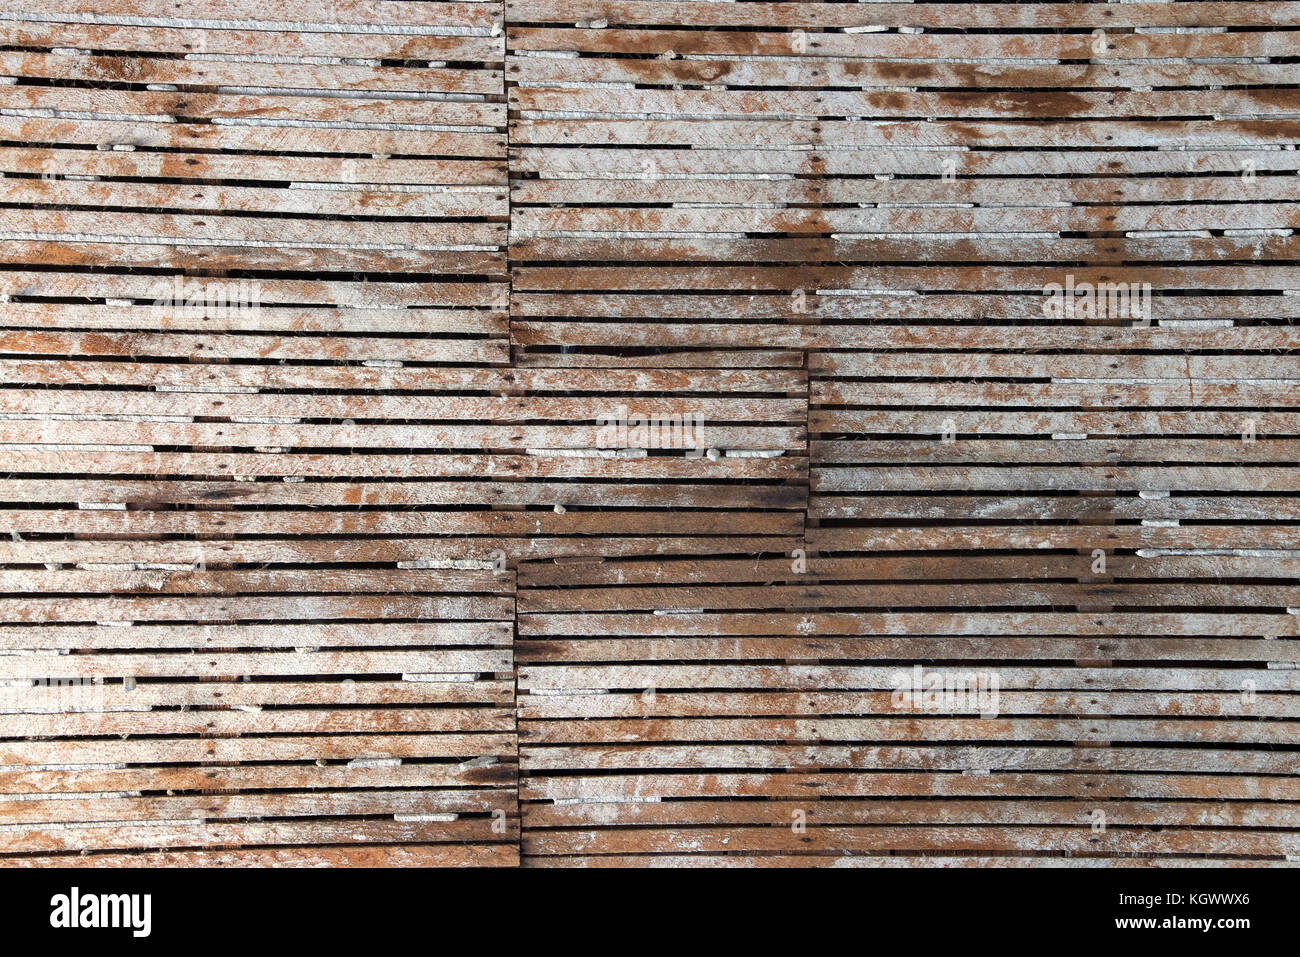 Cảm bề mặt gỗ nhiều rãnh - Hãy đắm chìm trong sự mịn màng và ấm áp của bề mặt gỗ nhiều rãnh. Điều này sẽ mang đến cho bạn cảm giác thân thiện và dễ chịu khi chạm vào các vân gỗ. Hãy xem hình ảnh liên quan để tận hưởng cảm giác đó ngay bây giờ.